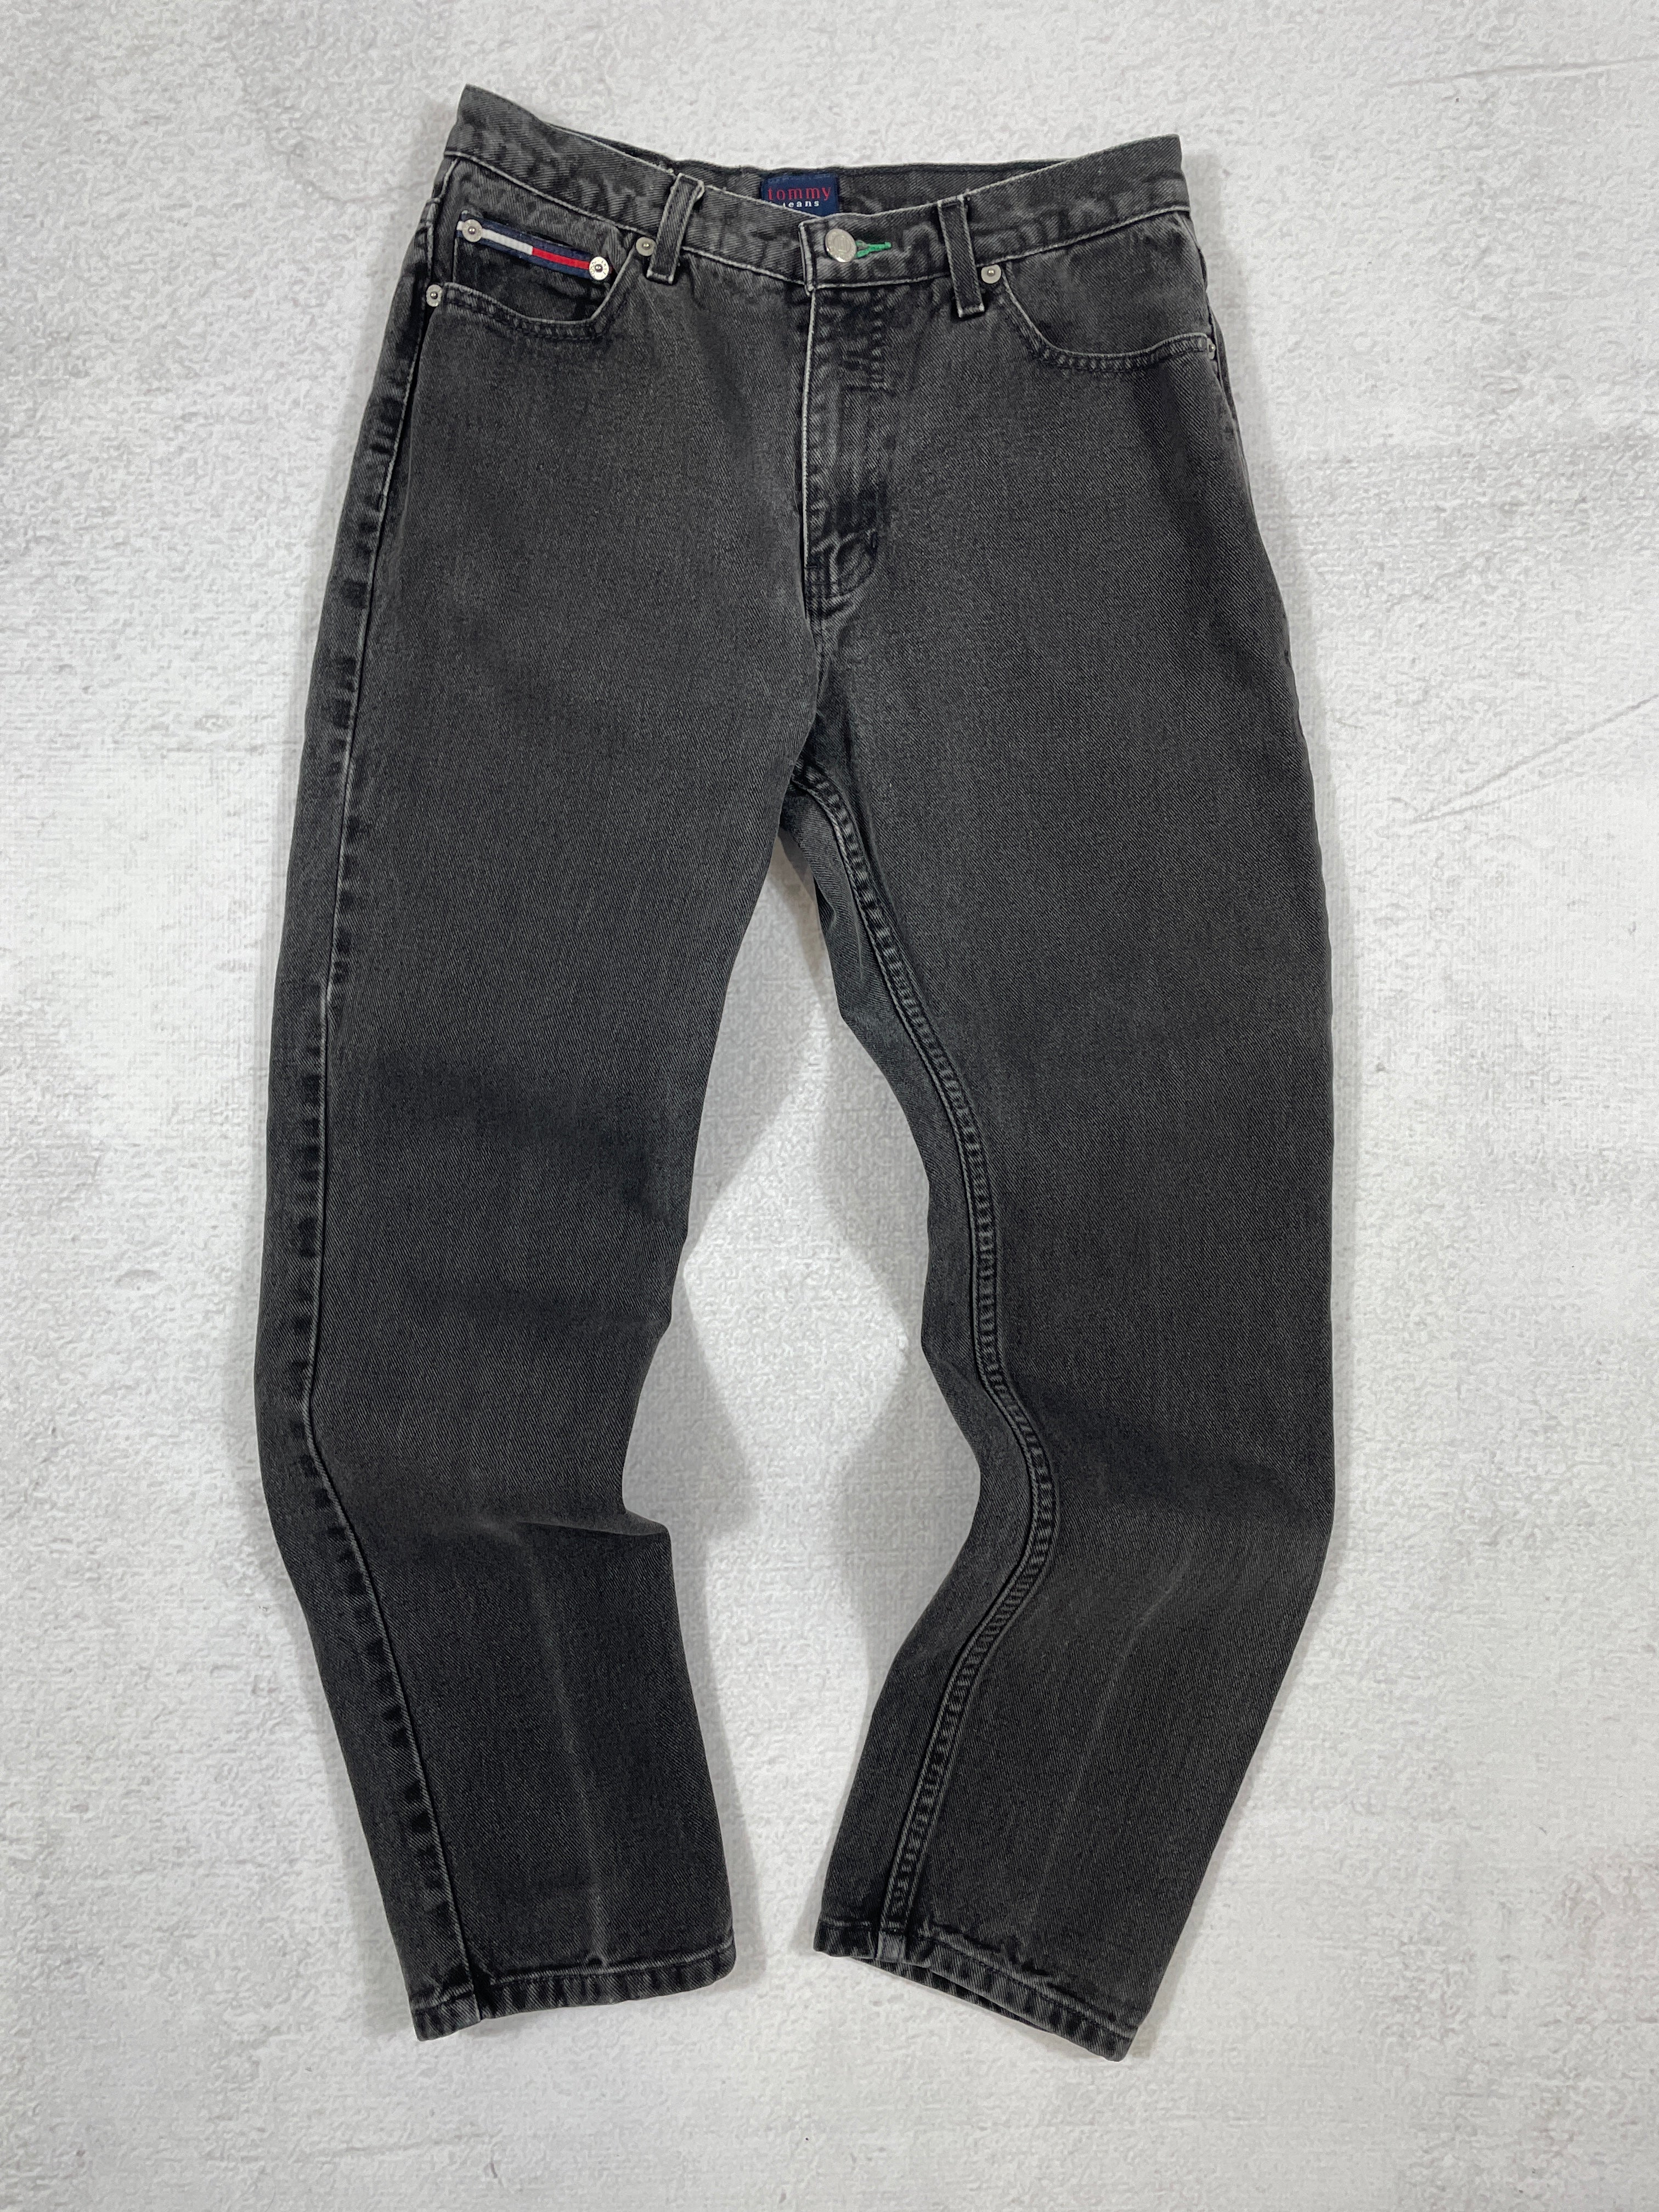 Vintage Tommy Hilfiger Jeans - Women's 29Wx30L